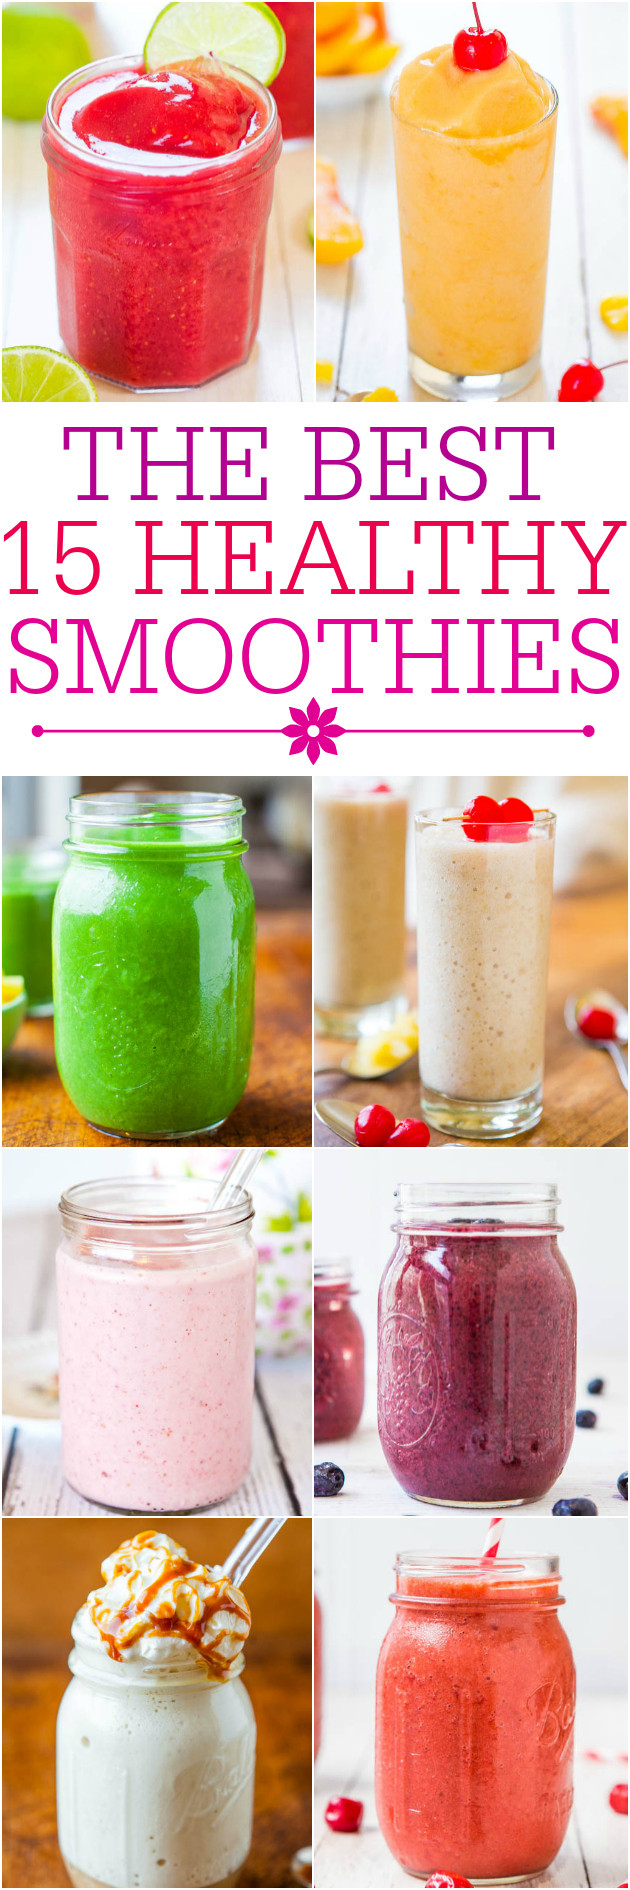 Healthy Fruit Smoothies
 healthy fruit smoothie recipes